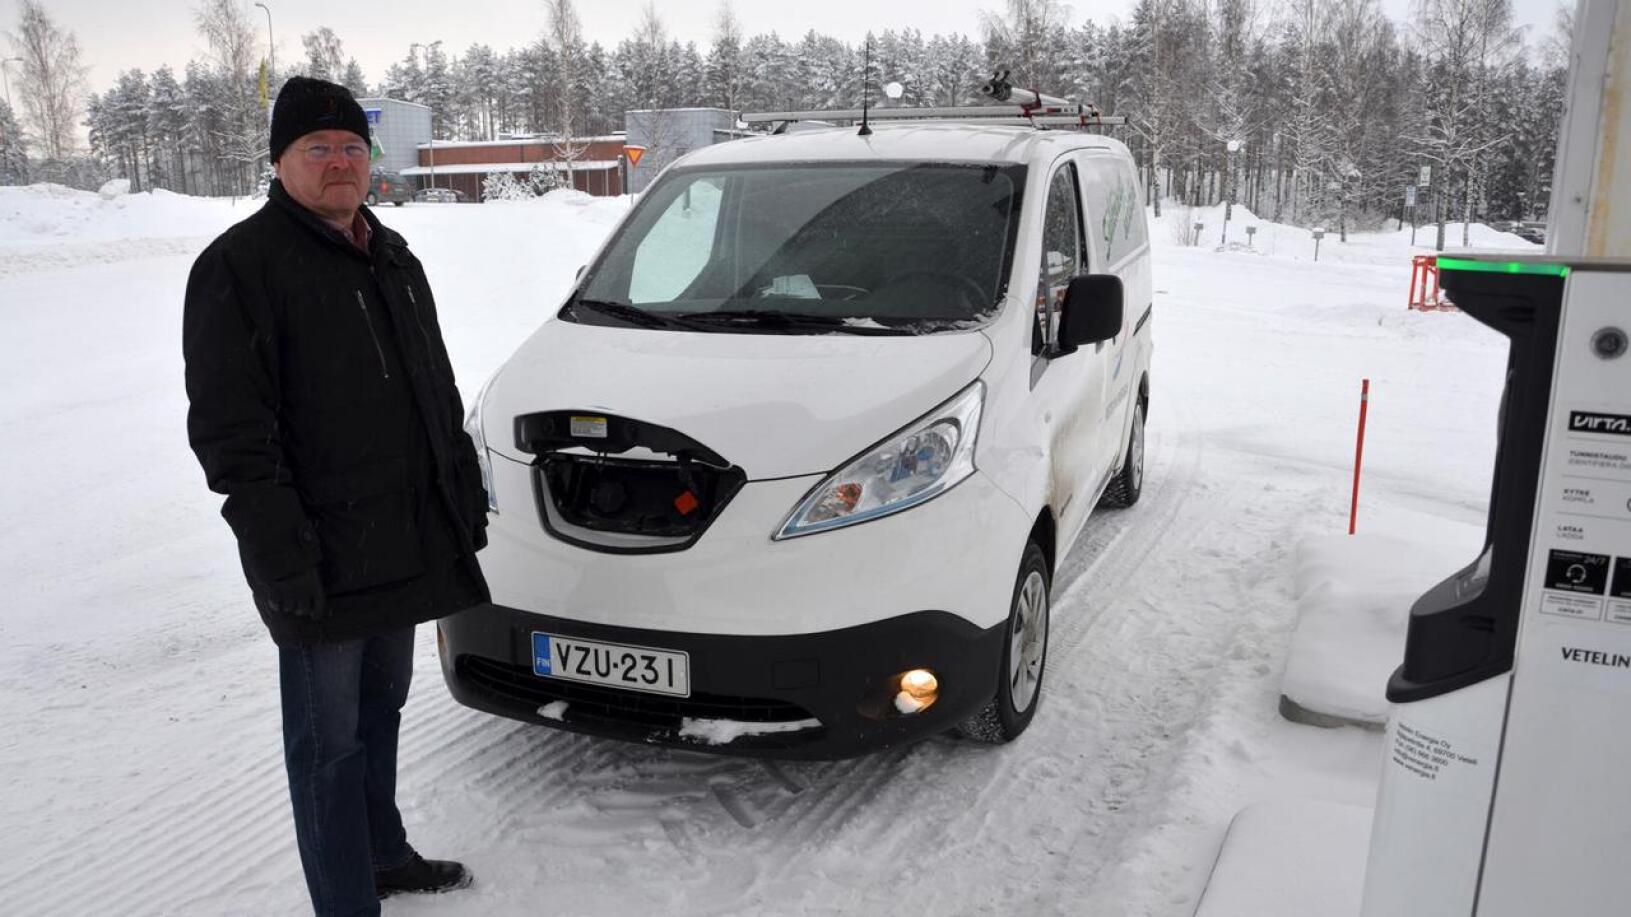 Vetelin Energian toimitusjohtaja Juha Kauppinen kertoo, että yritys hankki sähköauton käyttöönsä viime vuonna. Latauspistokkeet ovat auton nokassa.